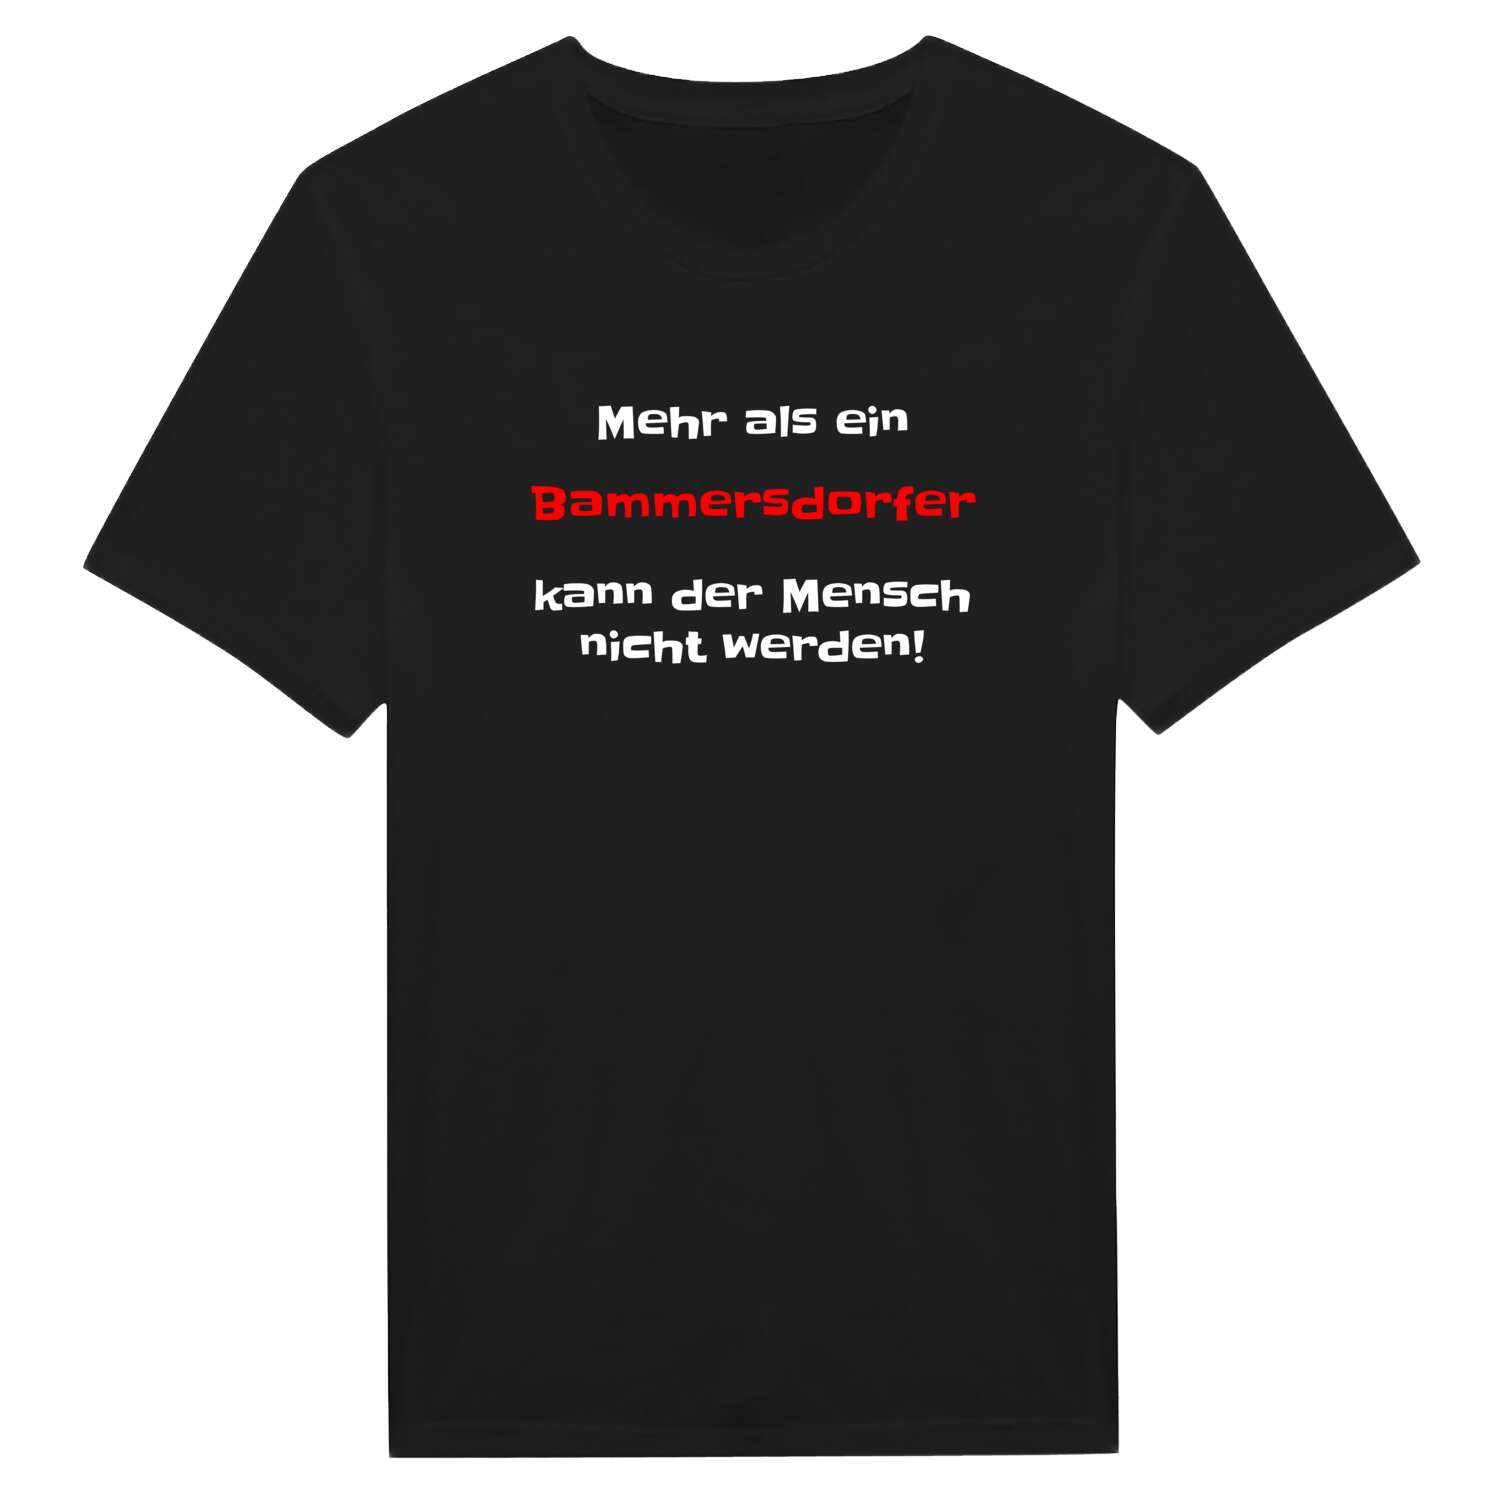 Bammersdorf T-Shirt »Mehr als ein«